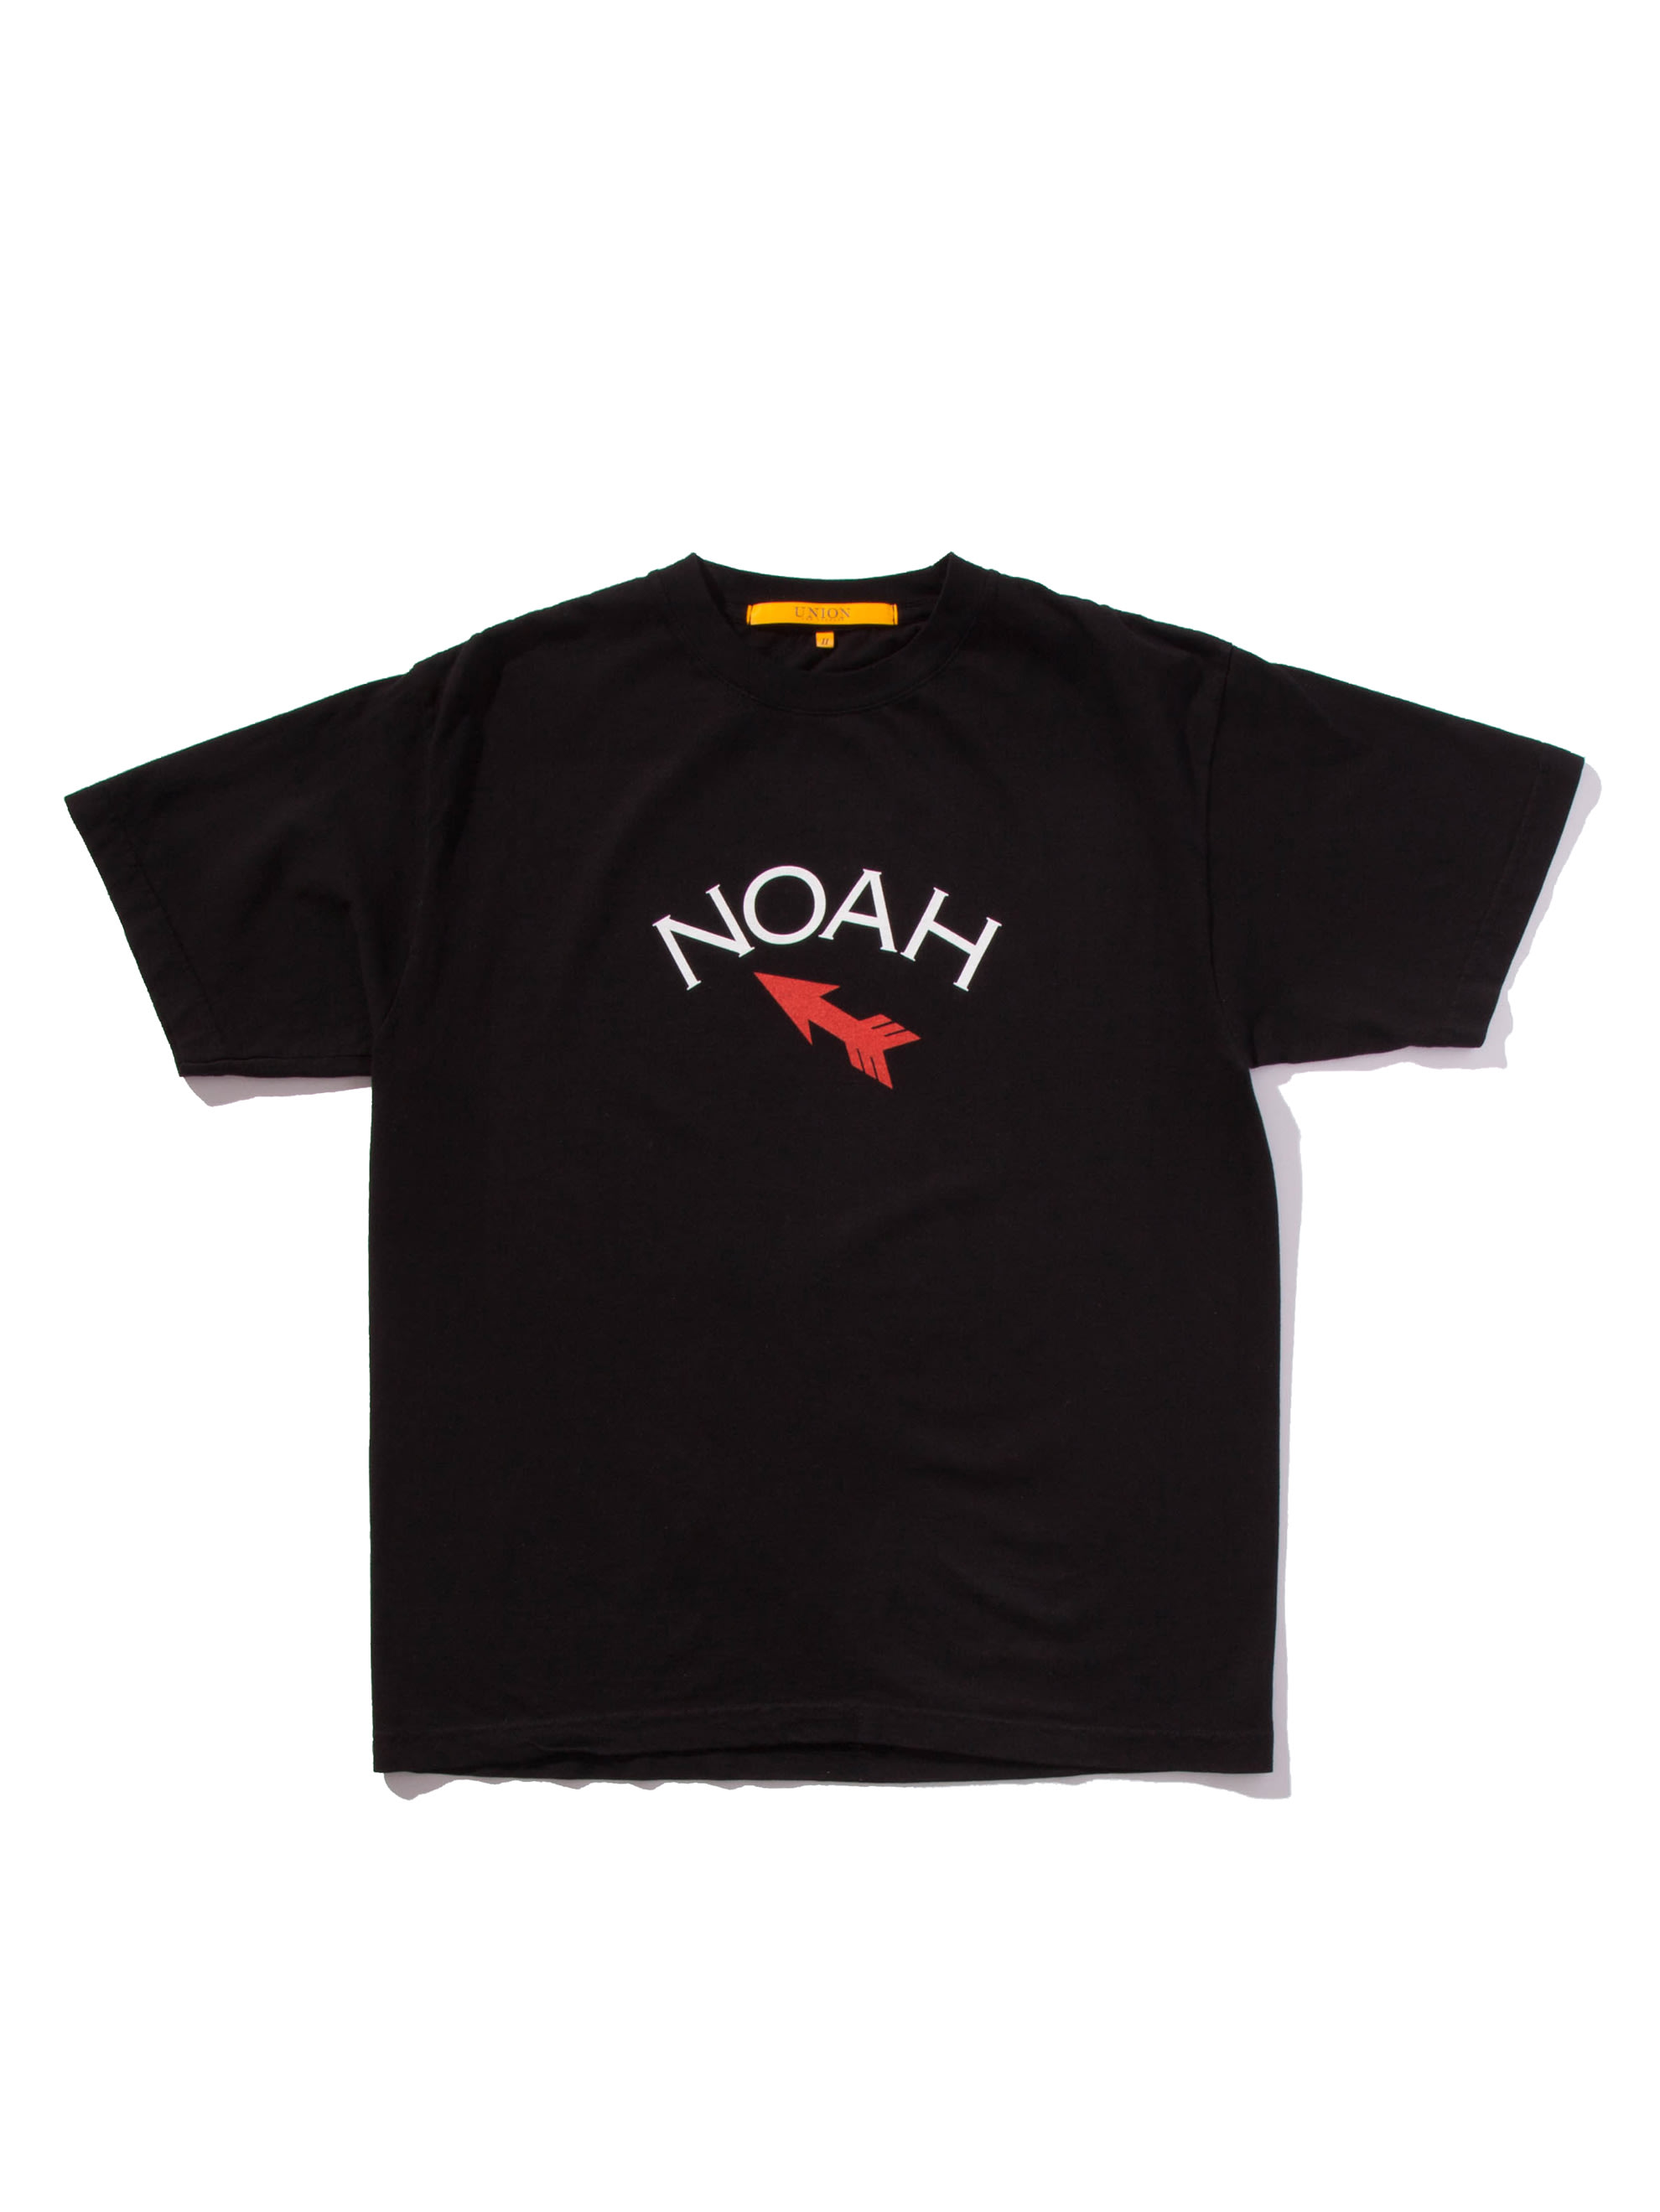 Noah x ComplexCon t-shirt